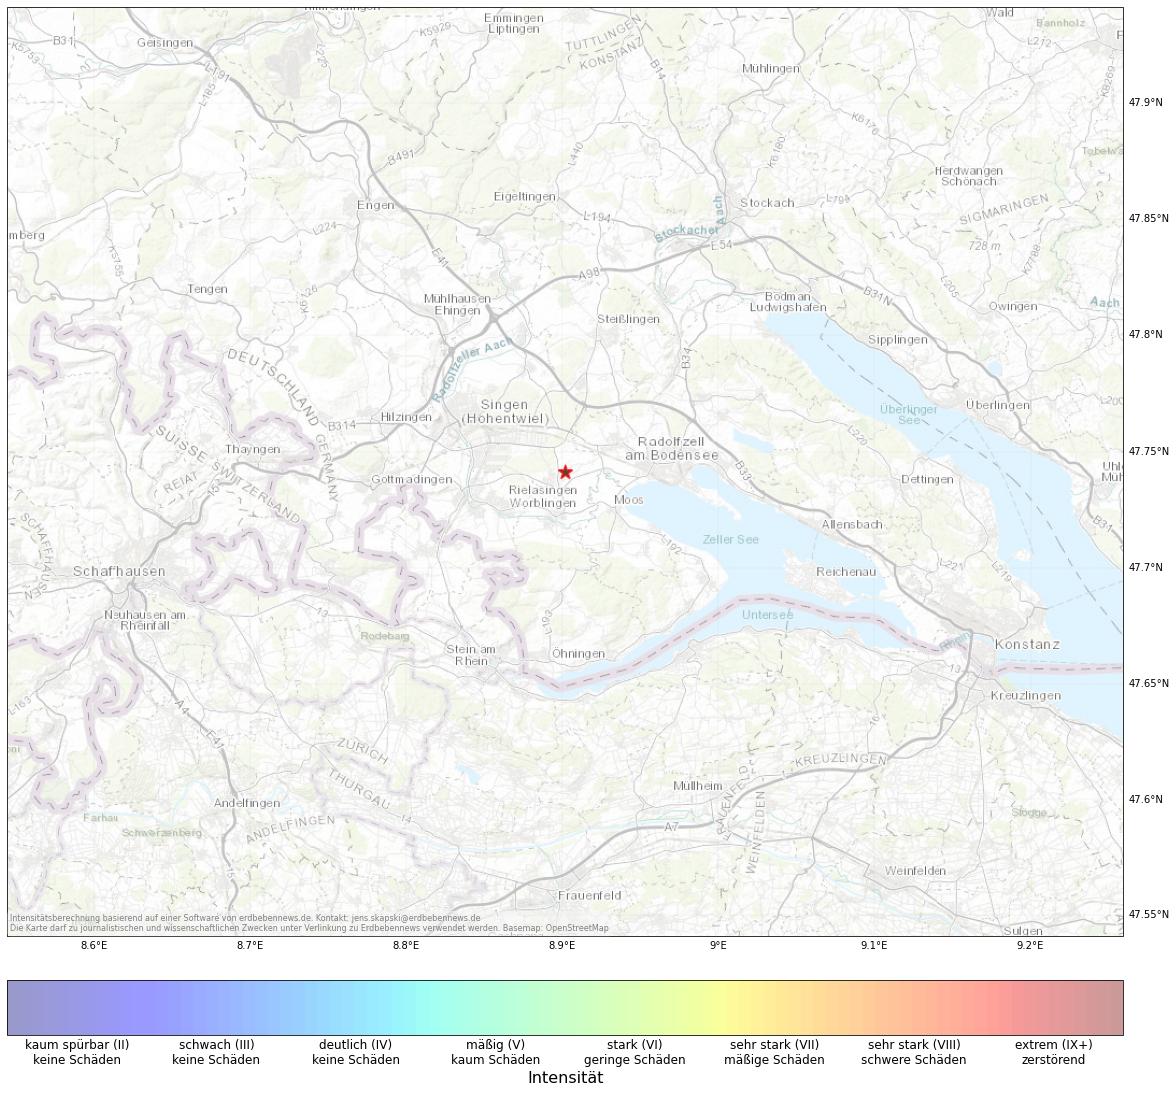 Berechnete Intensität (ShakeMap) des Erdbebens der Stärke 1.9 am 18. November, 00:54 in Deutschland